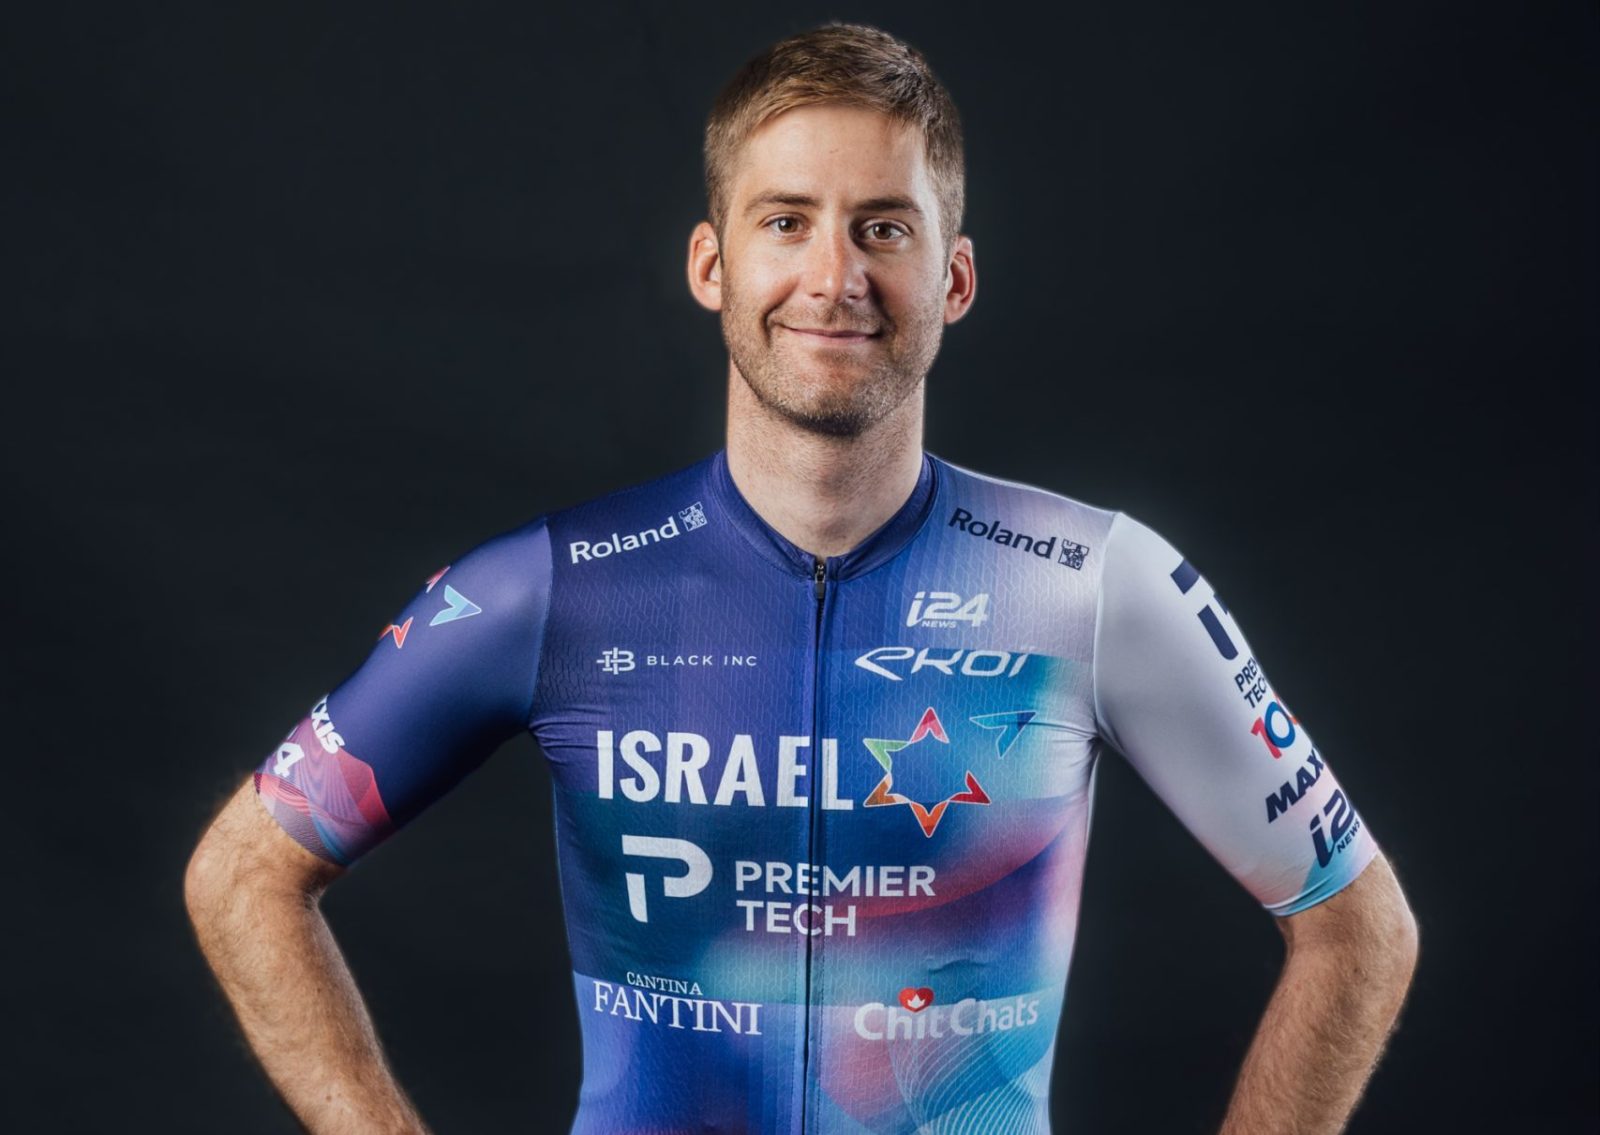 L’équipe Israël – Premier Tech invitée au Tour de France